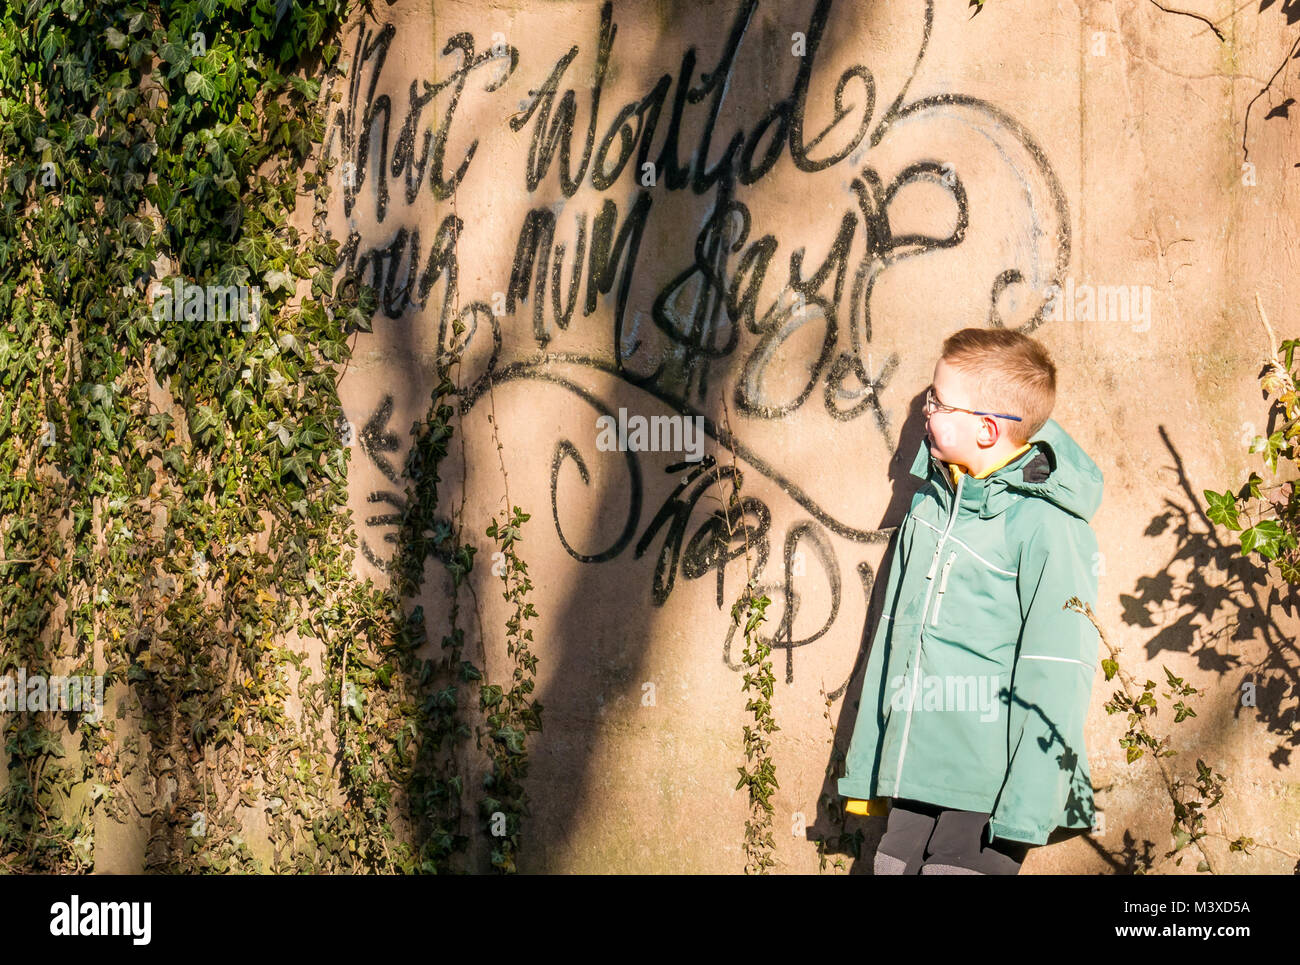 6 ans avec des lunettes debout à côté de la peinture en aérosol graffiti sur mur, qui lit ce que serait votre maman ?, Ecosse, Royaume-Uni Banque D'Images